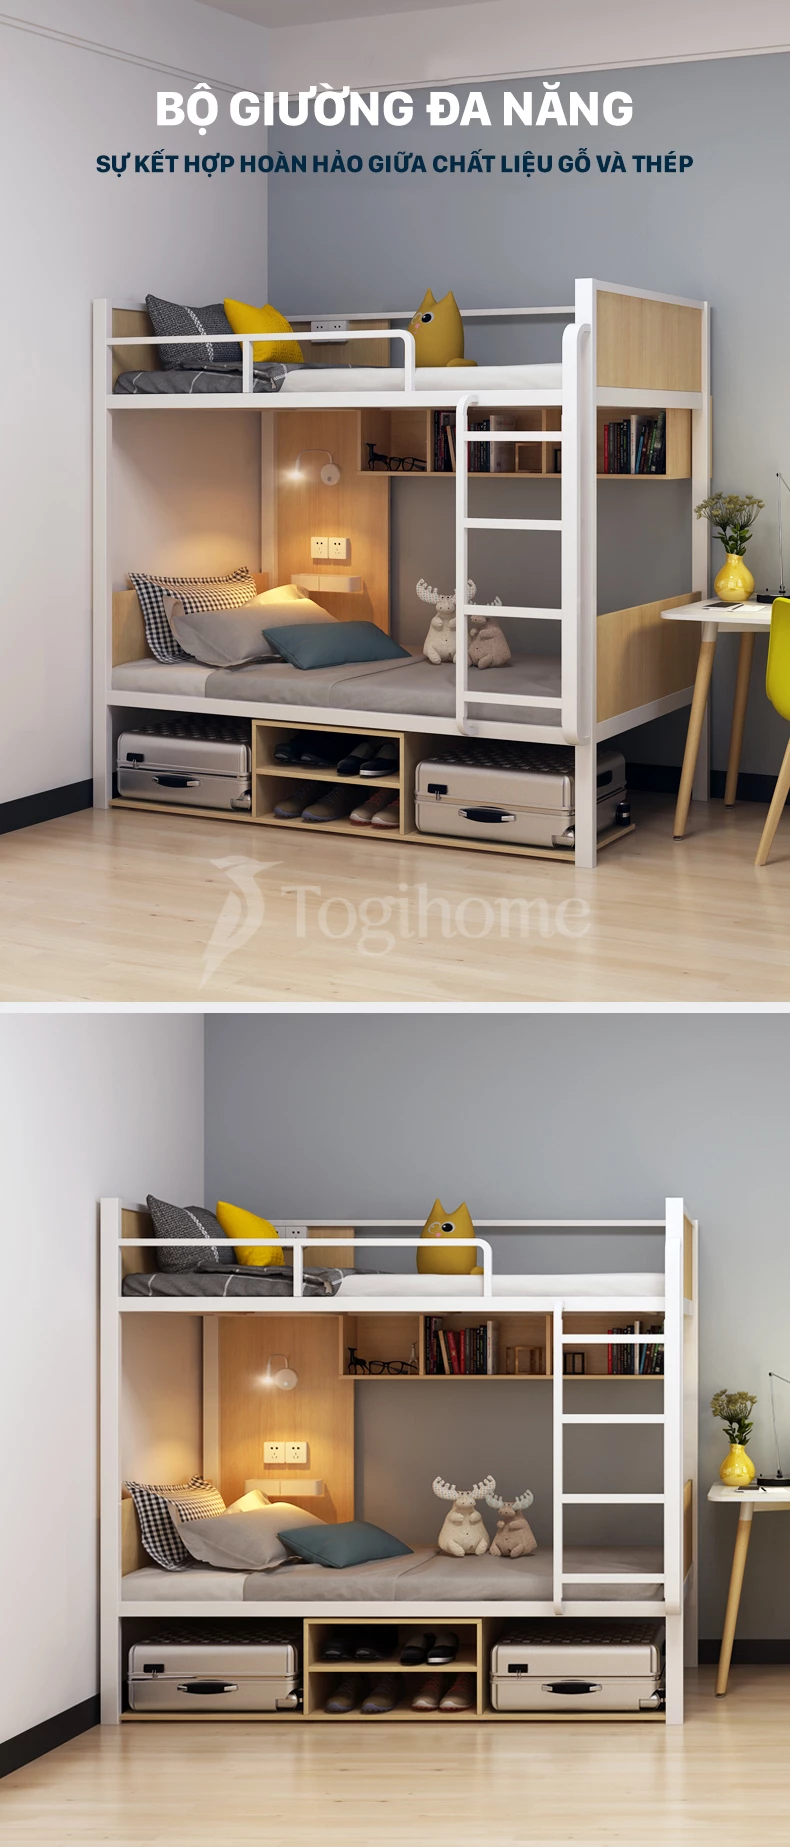 Kiểu dáng thiết kế Bộ giường ngủ 2 tầng đa năng GSTE006 kết hợp tủ và cầu thang kiểu dáng hiện đại, tối ưu không gian